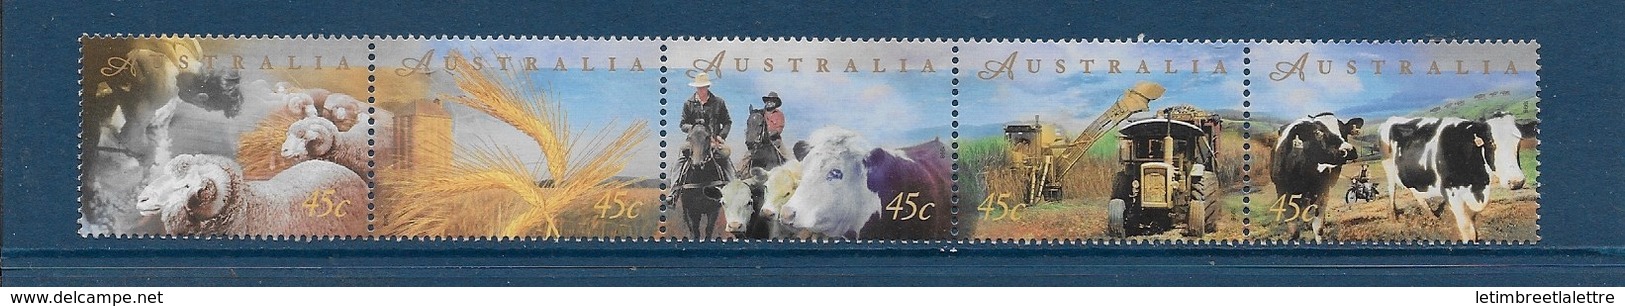 Australie N°1660 à 1664** - Mint Stamps